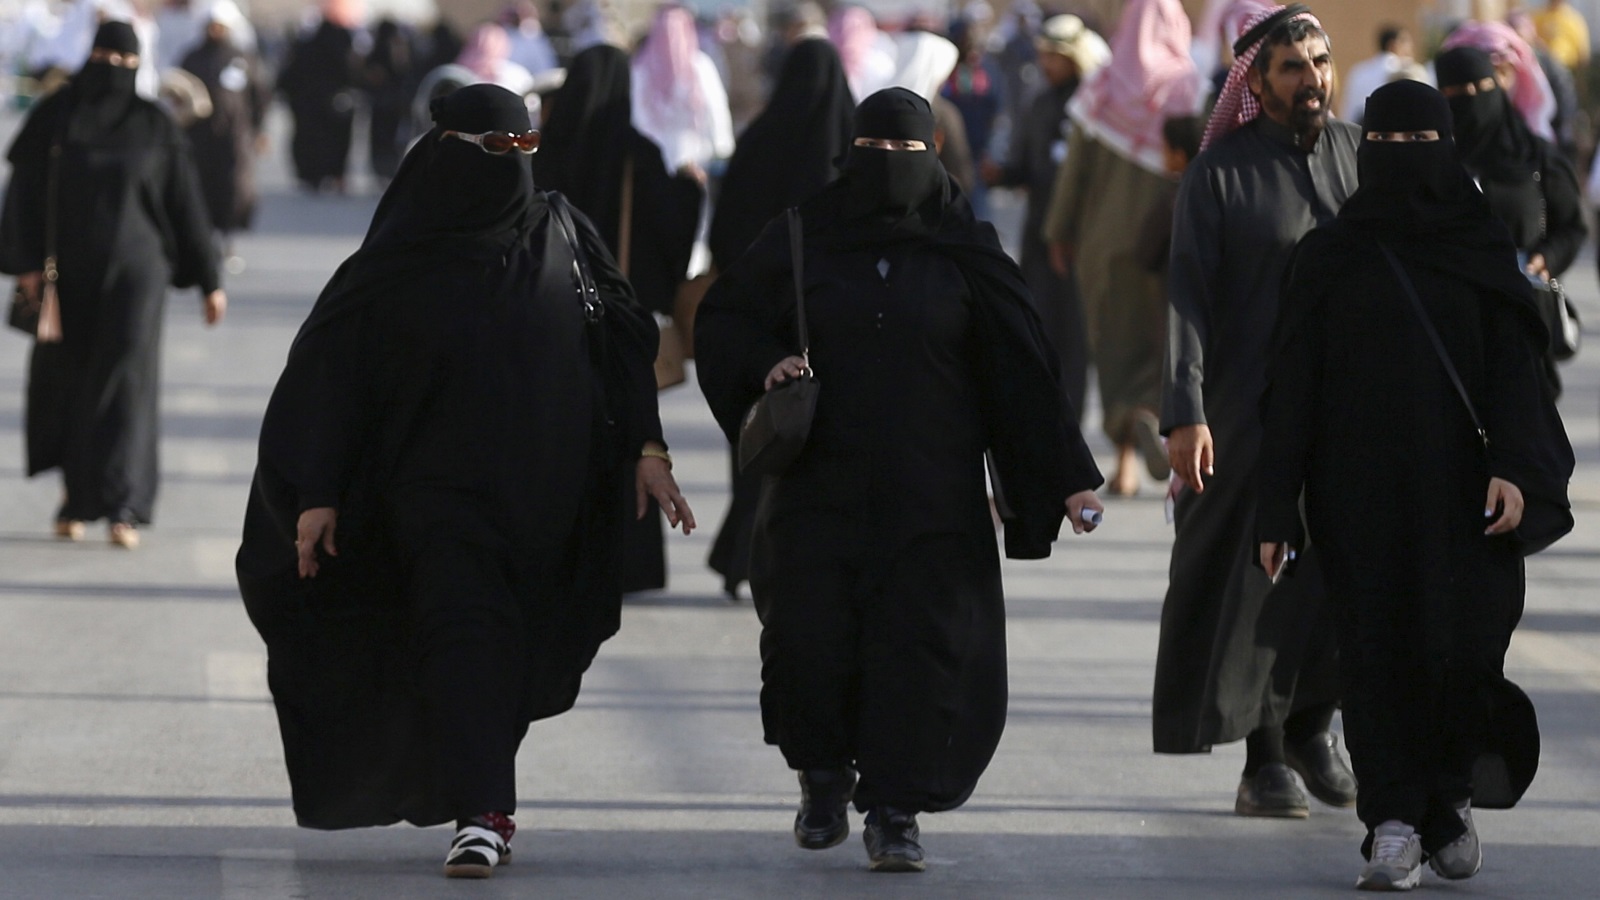  في حين أن المرأة السعودية تحرم من حقوقها، تتقدم السعودية لإعطاء روبوت 